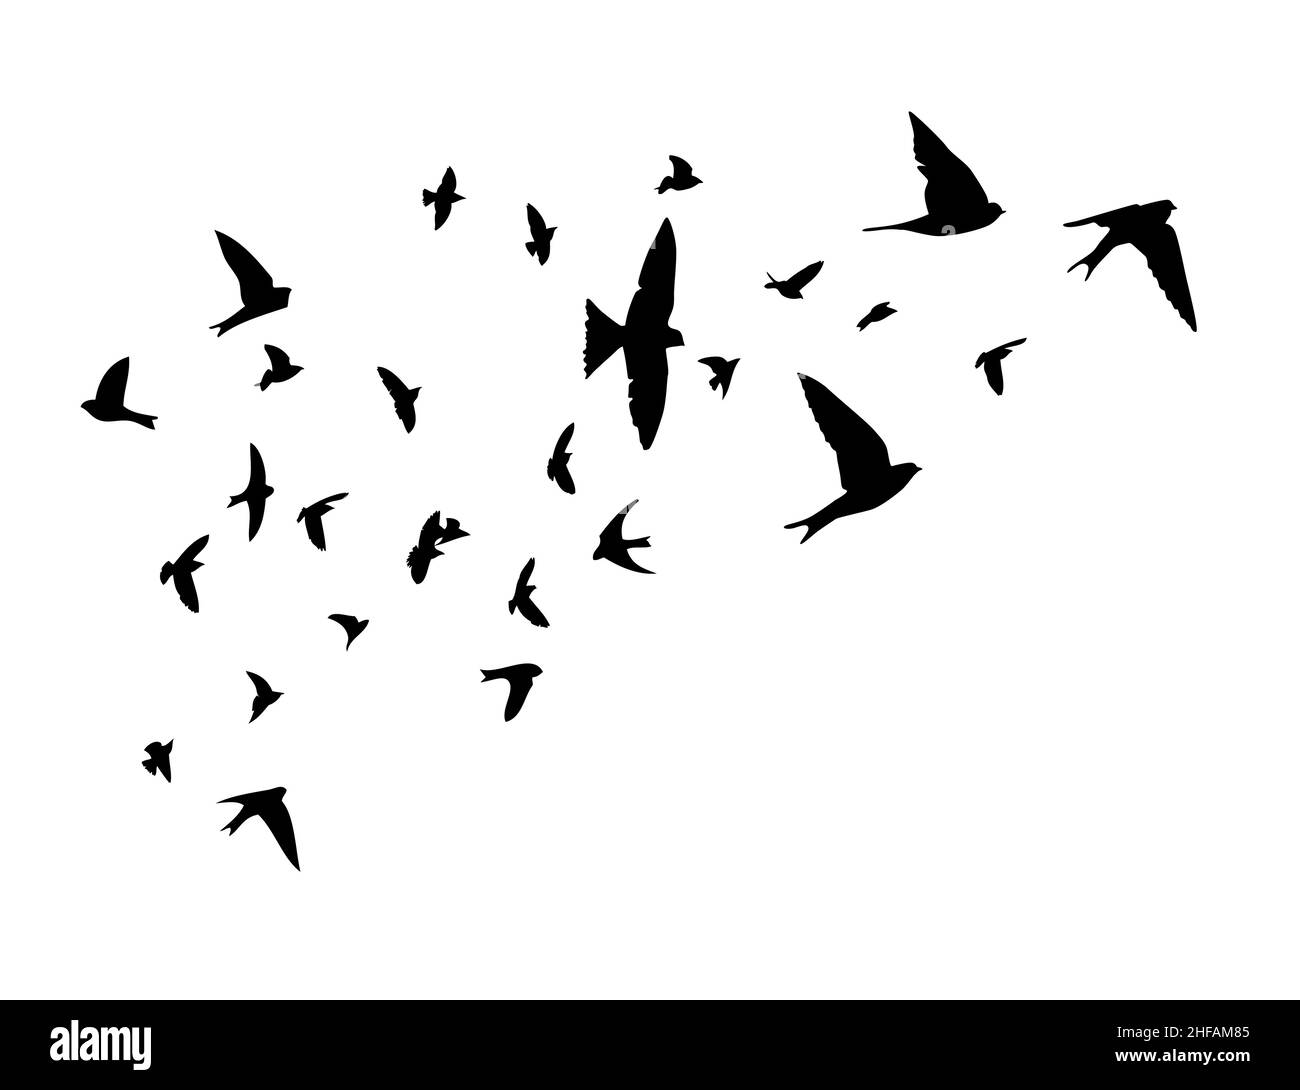 A flock of flying birds. Free birds. Flying swallows. Vector illustration Stock Vector